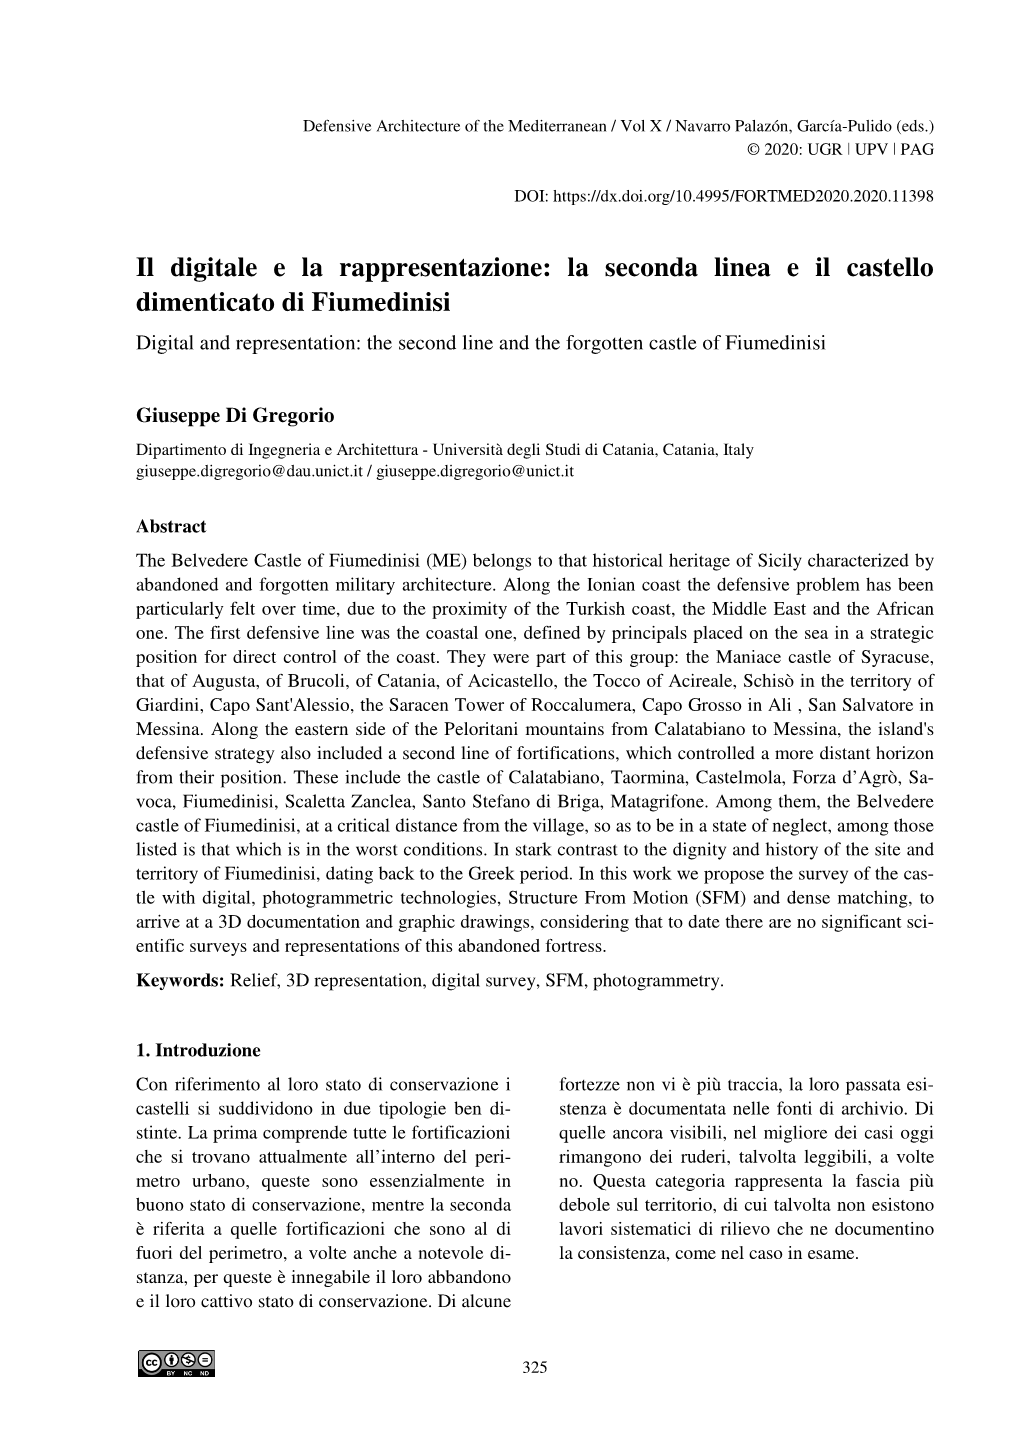 La Seconda Linea E Il Castello Dimenticato Di Fiumedinisi Digital and Representation: the Second Line and the Forgotten Castle of Fiumedinisi